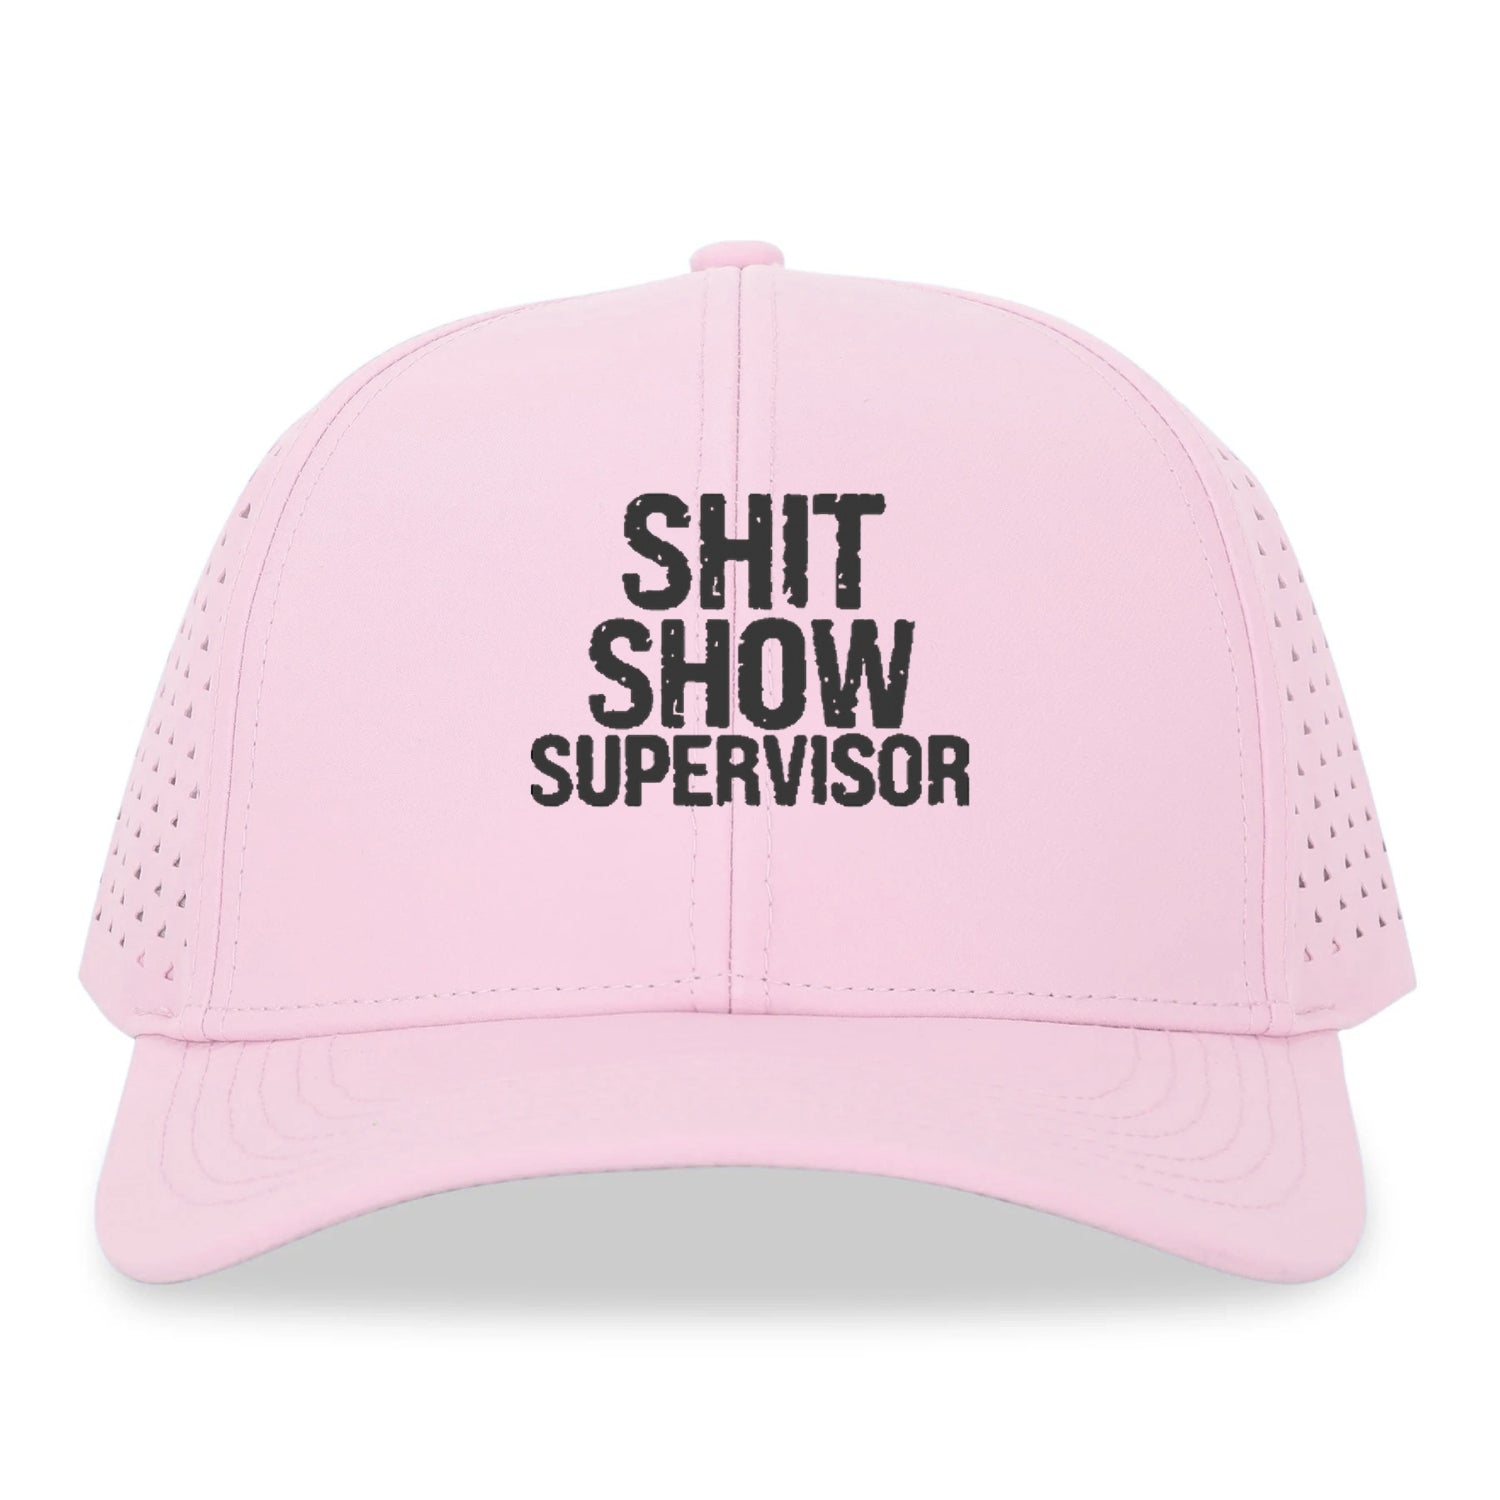 shit show supervisor Hat